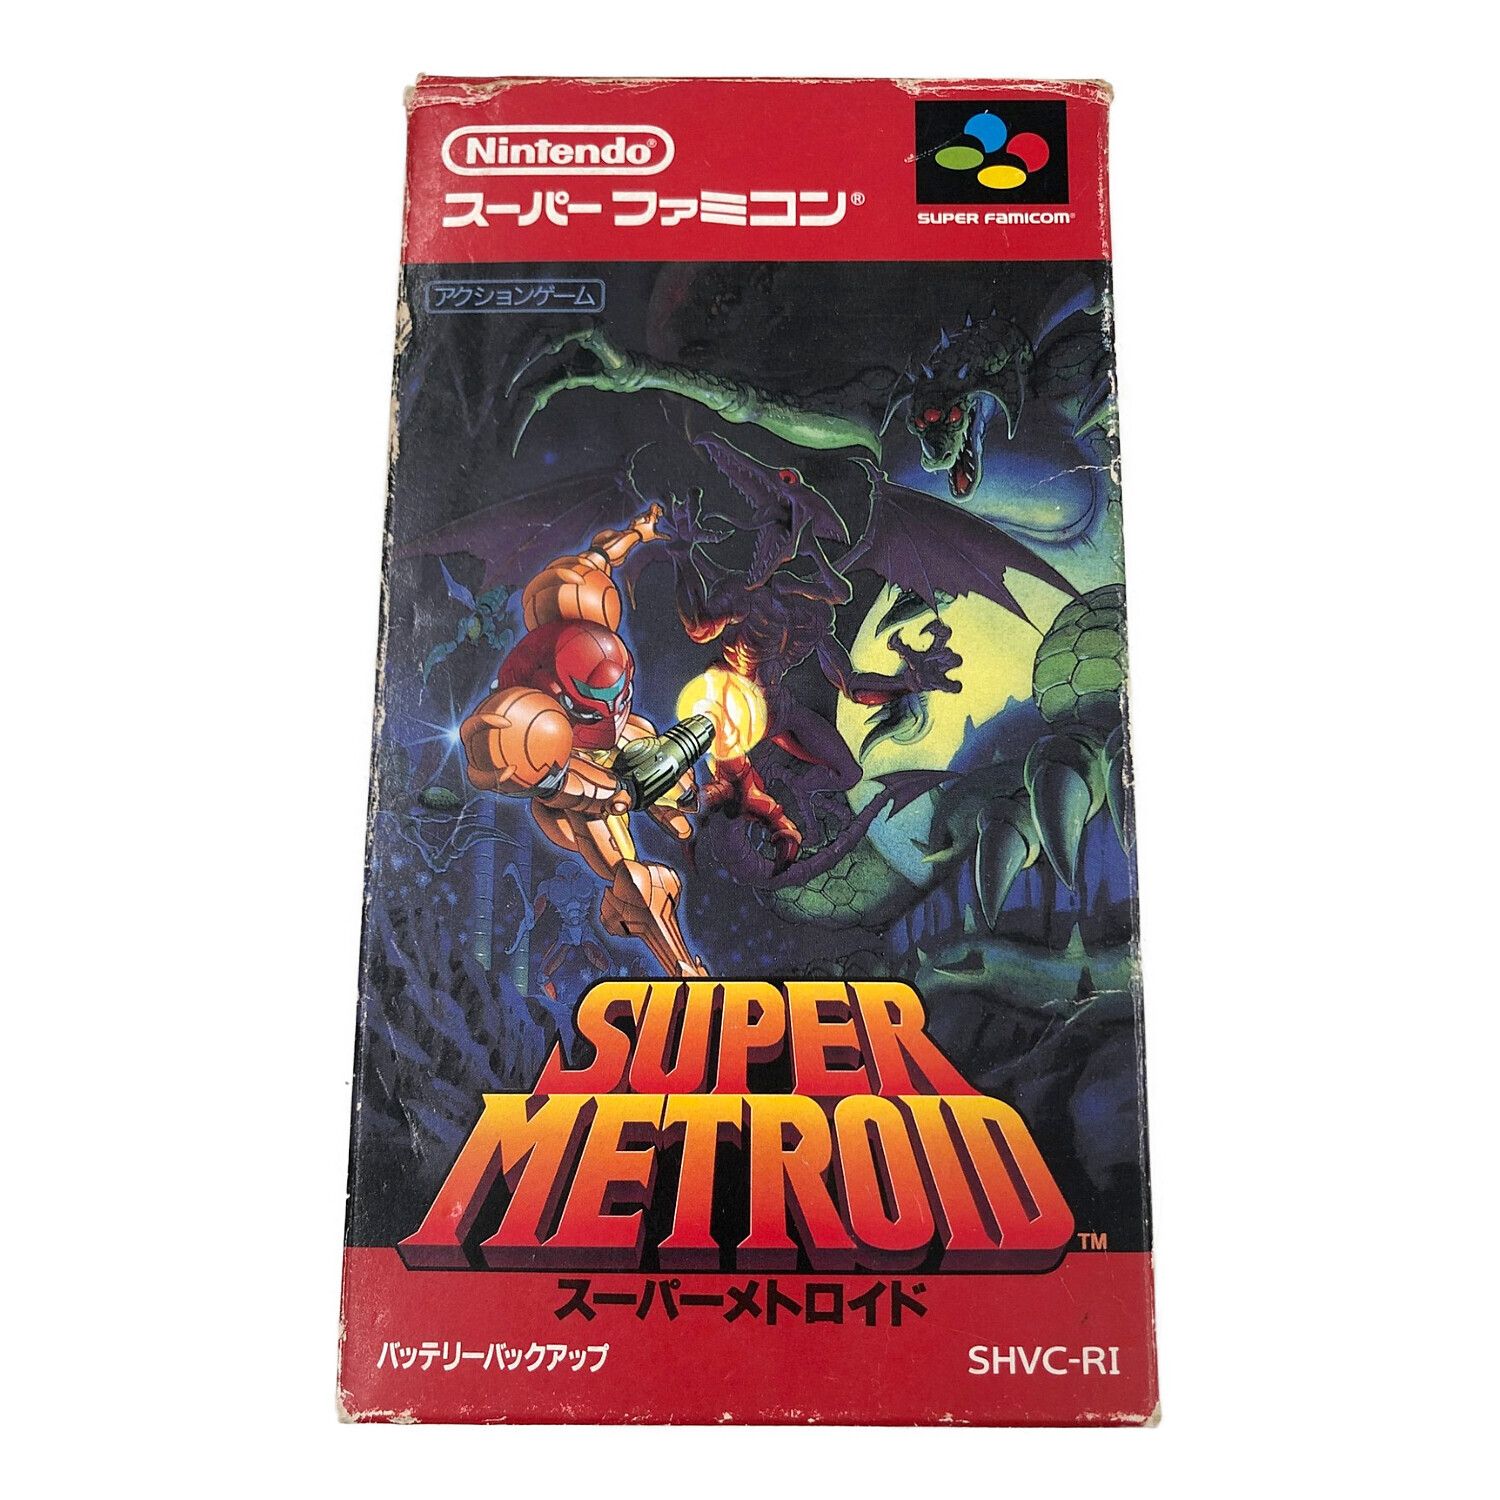 美品 スーパーメトロイド 攻略本付き Super Metroid 任天堂 - Nintendo 